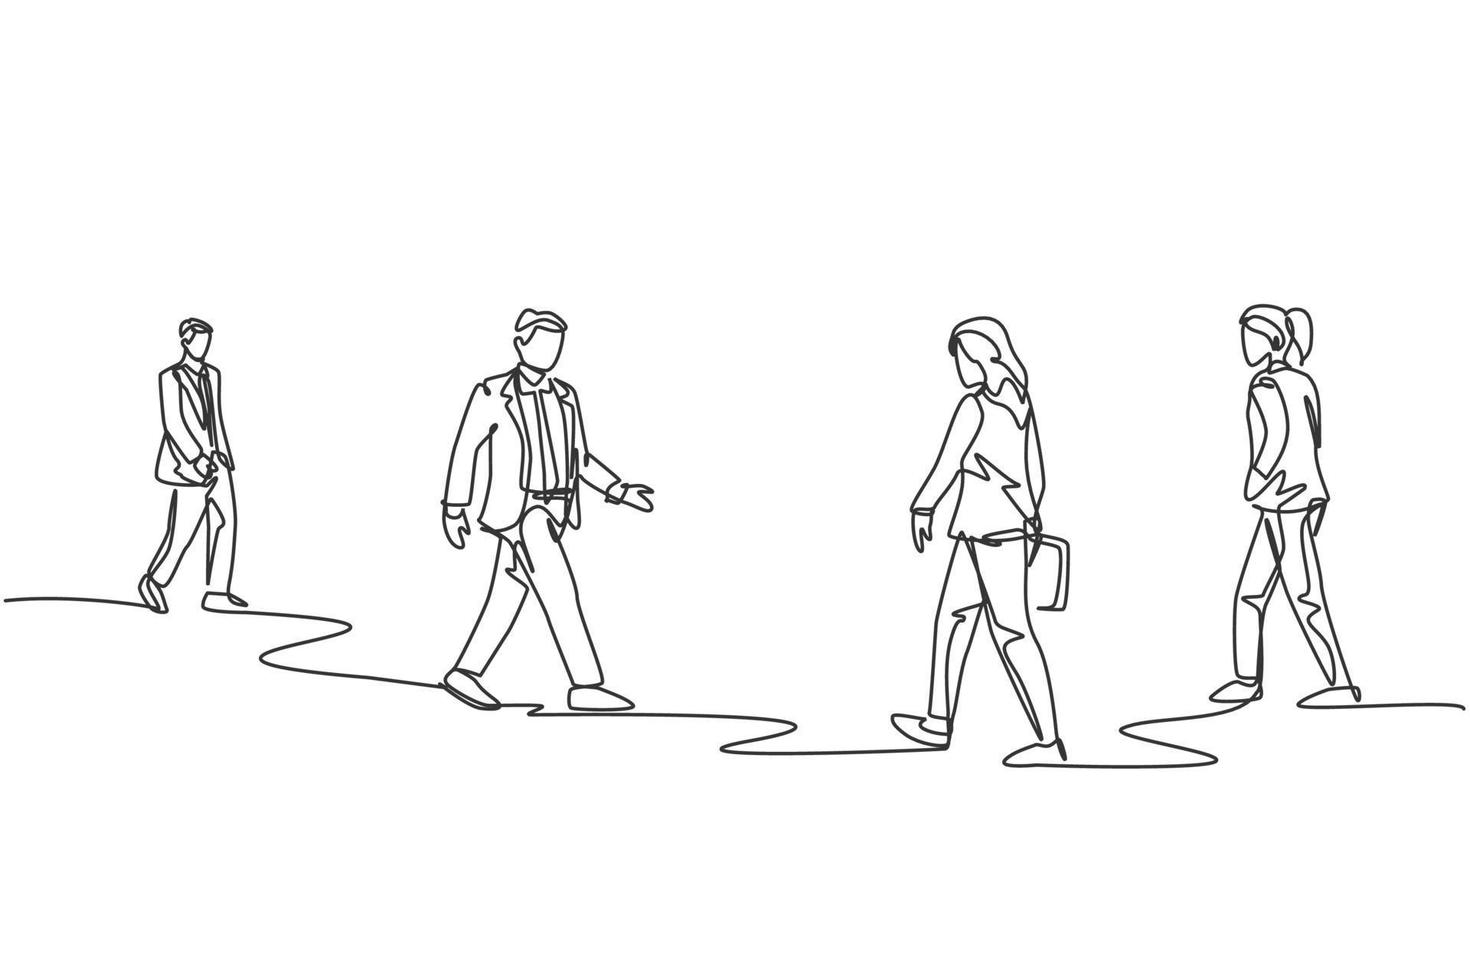 desenho de linha única contínua de grupos de passageiros urbanos que caminham repetidamente nas ruas da cidade e vão para o escritório. ilustração em vetor desenho de trabalhadores urbanos urbanos conceito uma linha